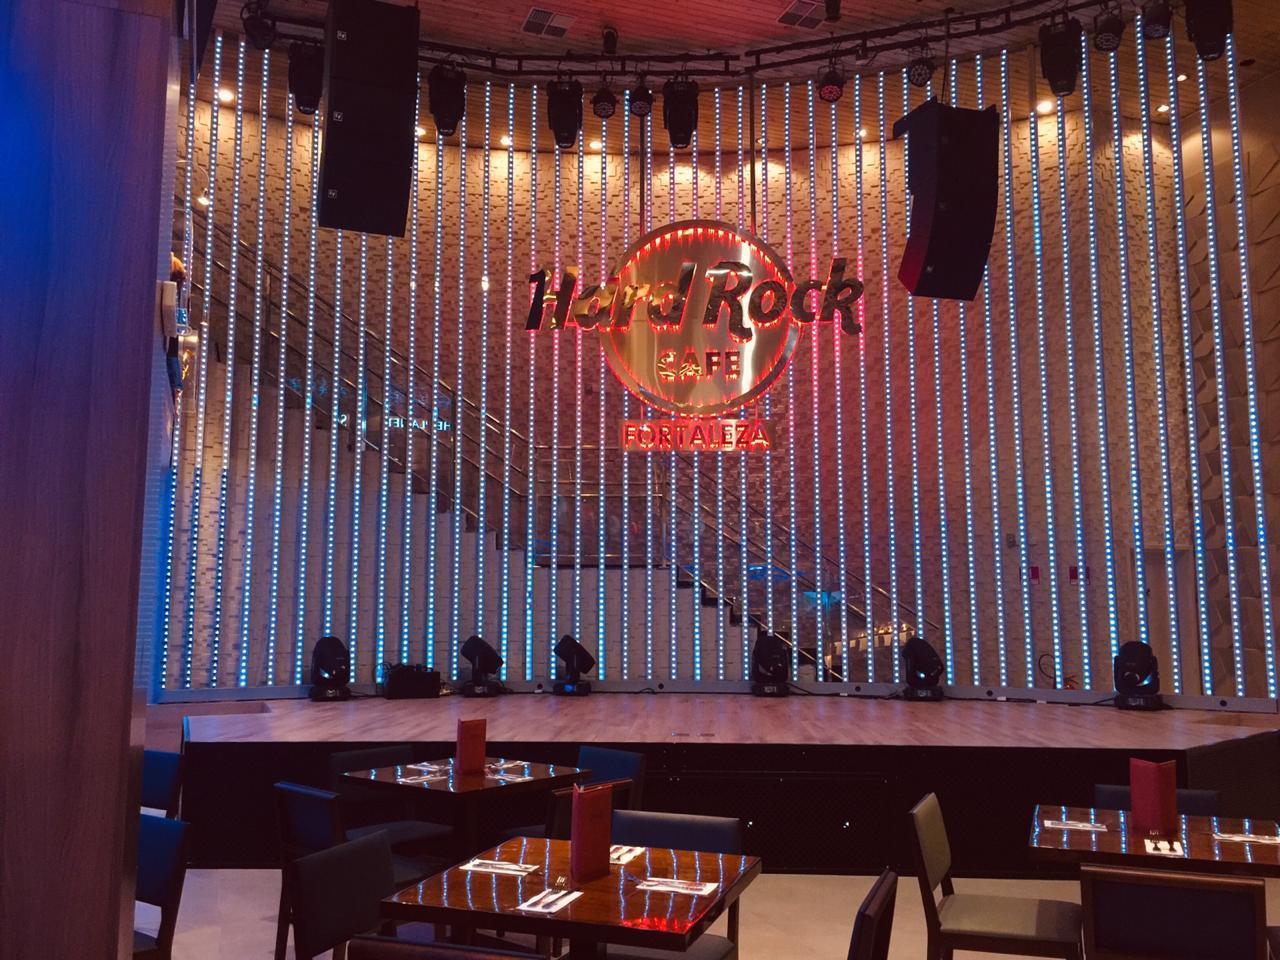 Hard Rock Cafe Fortaleza divulga programação musical para o feriadão